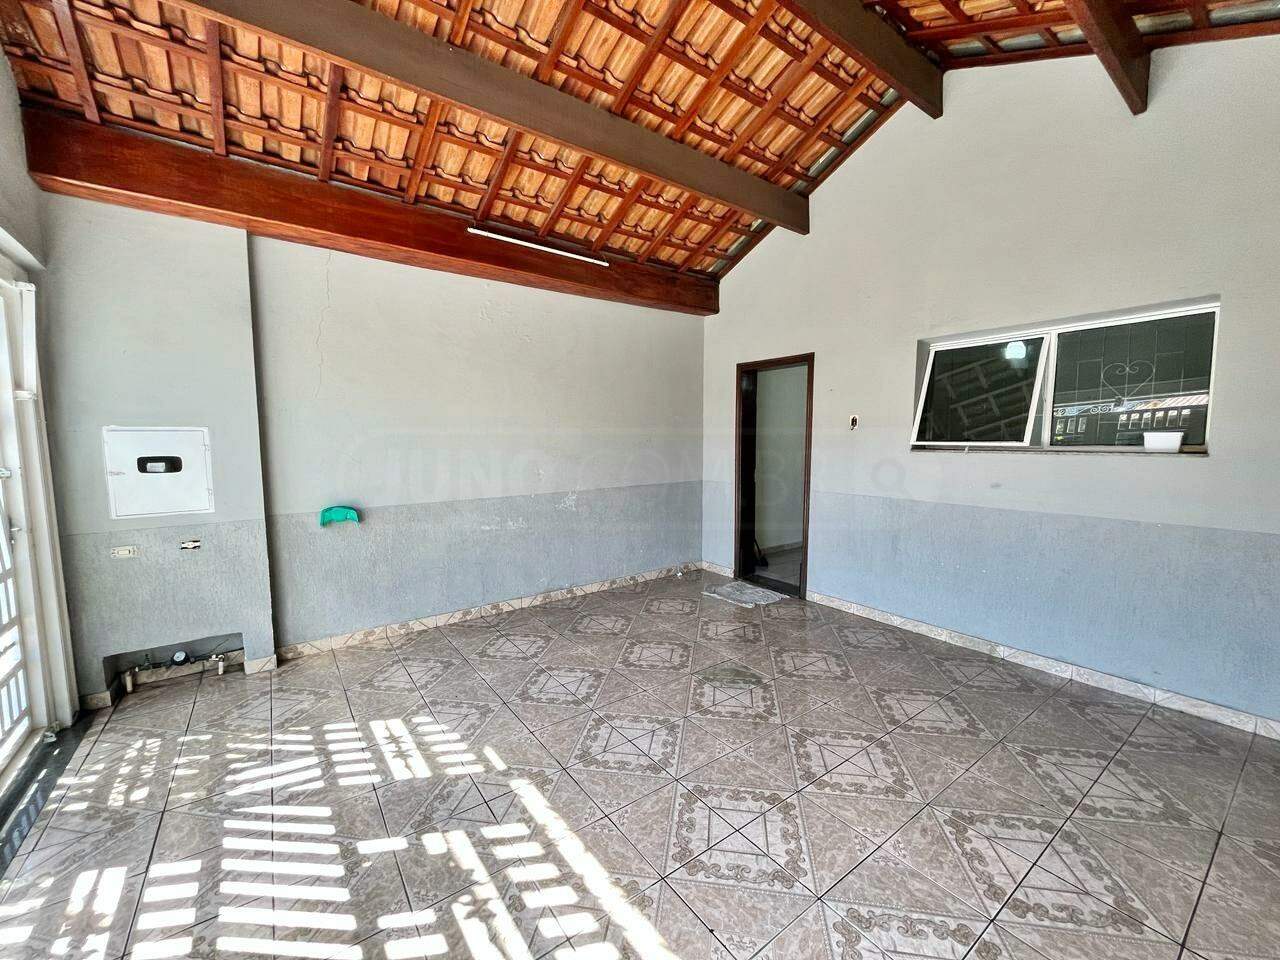 Casa à venda, 2 quartos, sendo 1 suíte, 1 vaga, no bairro Santa Terezinha em Piracicaba - SP